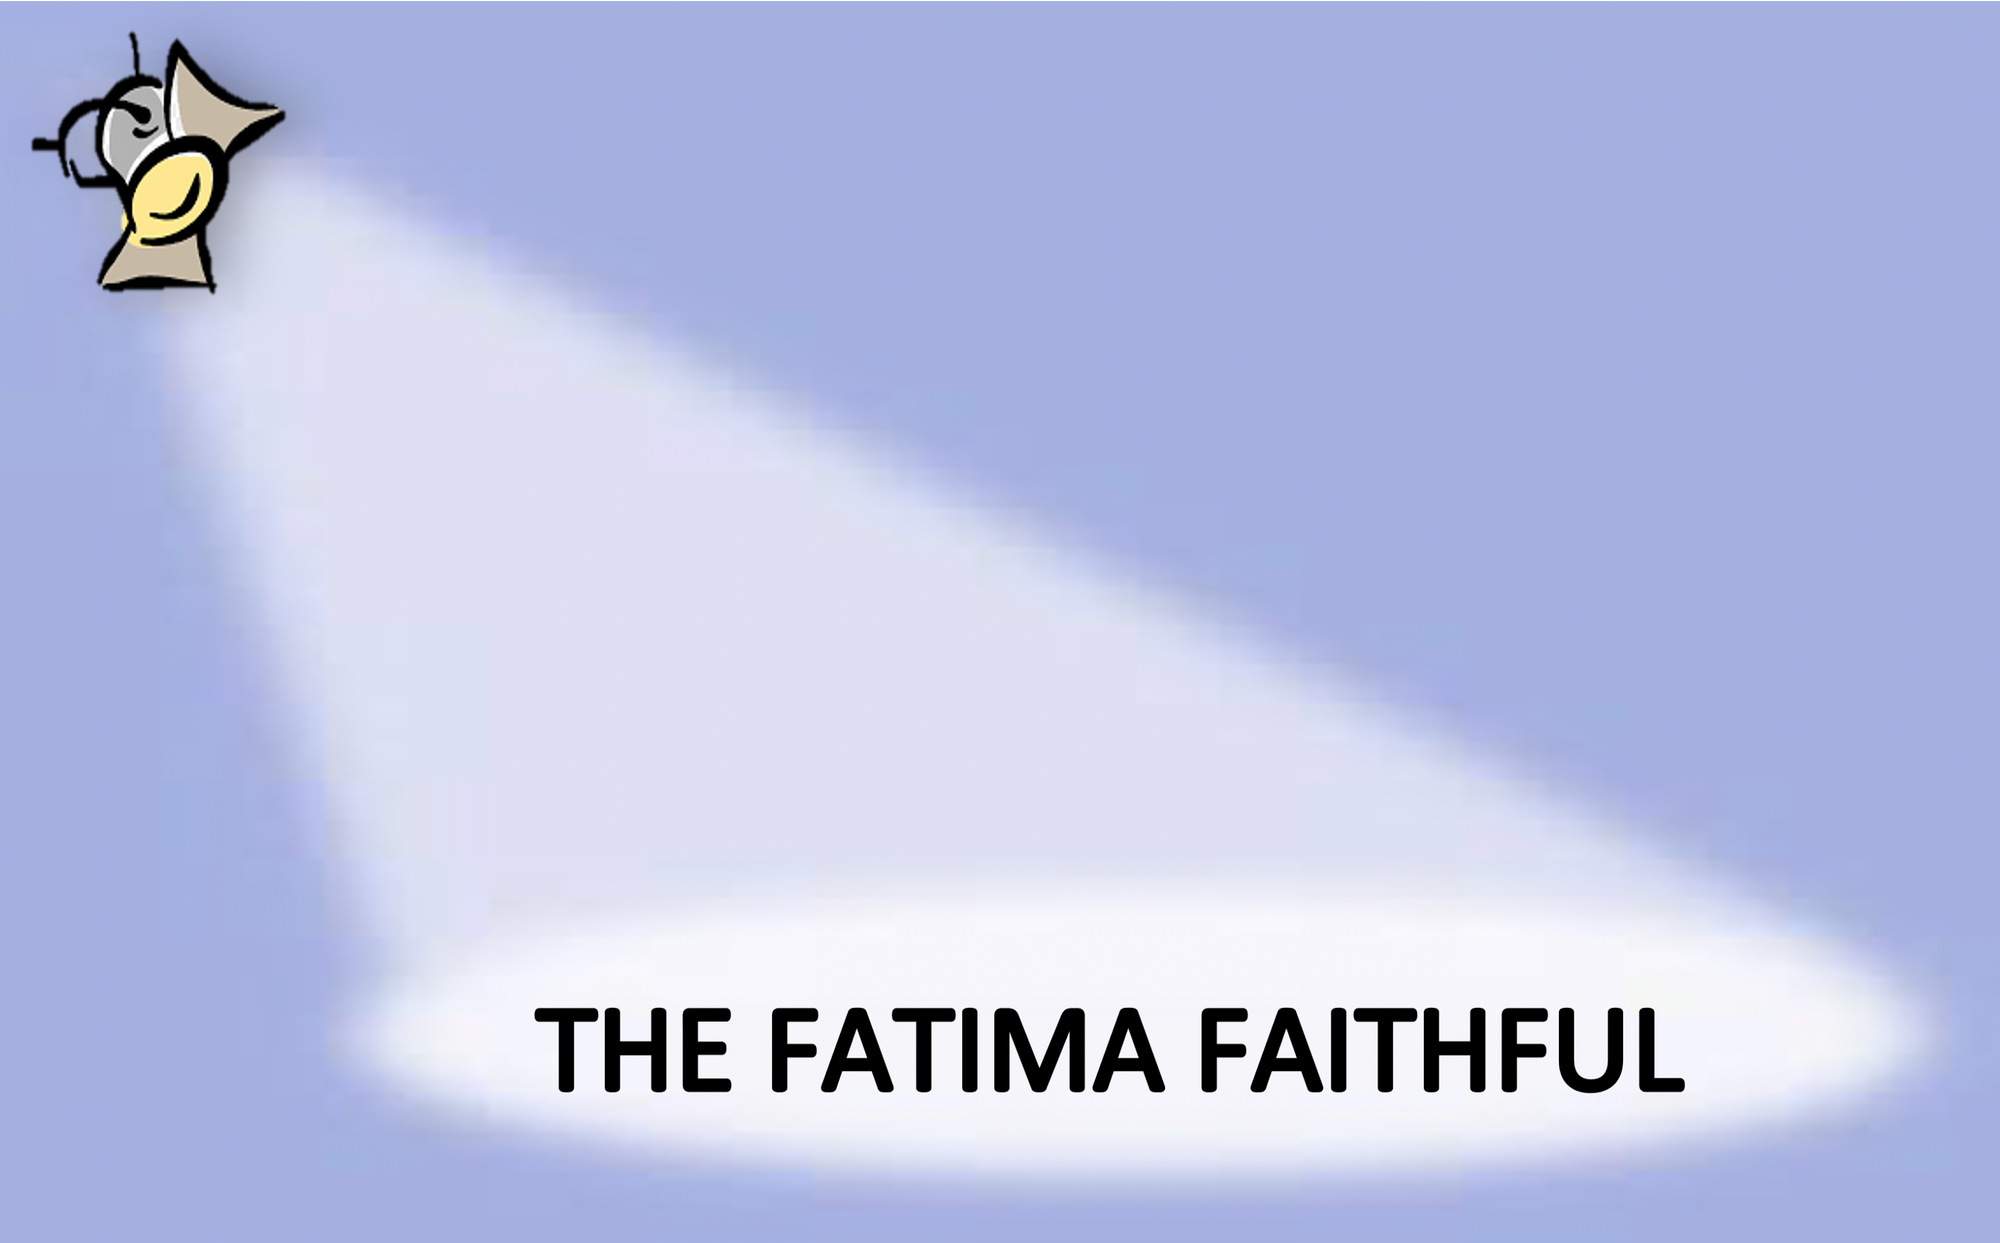 The Fatima Faithful for February 2021